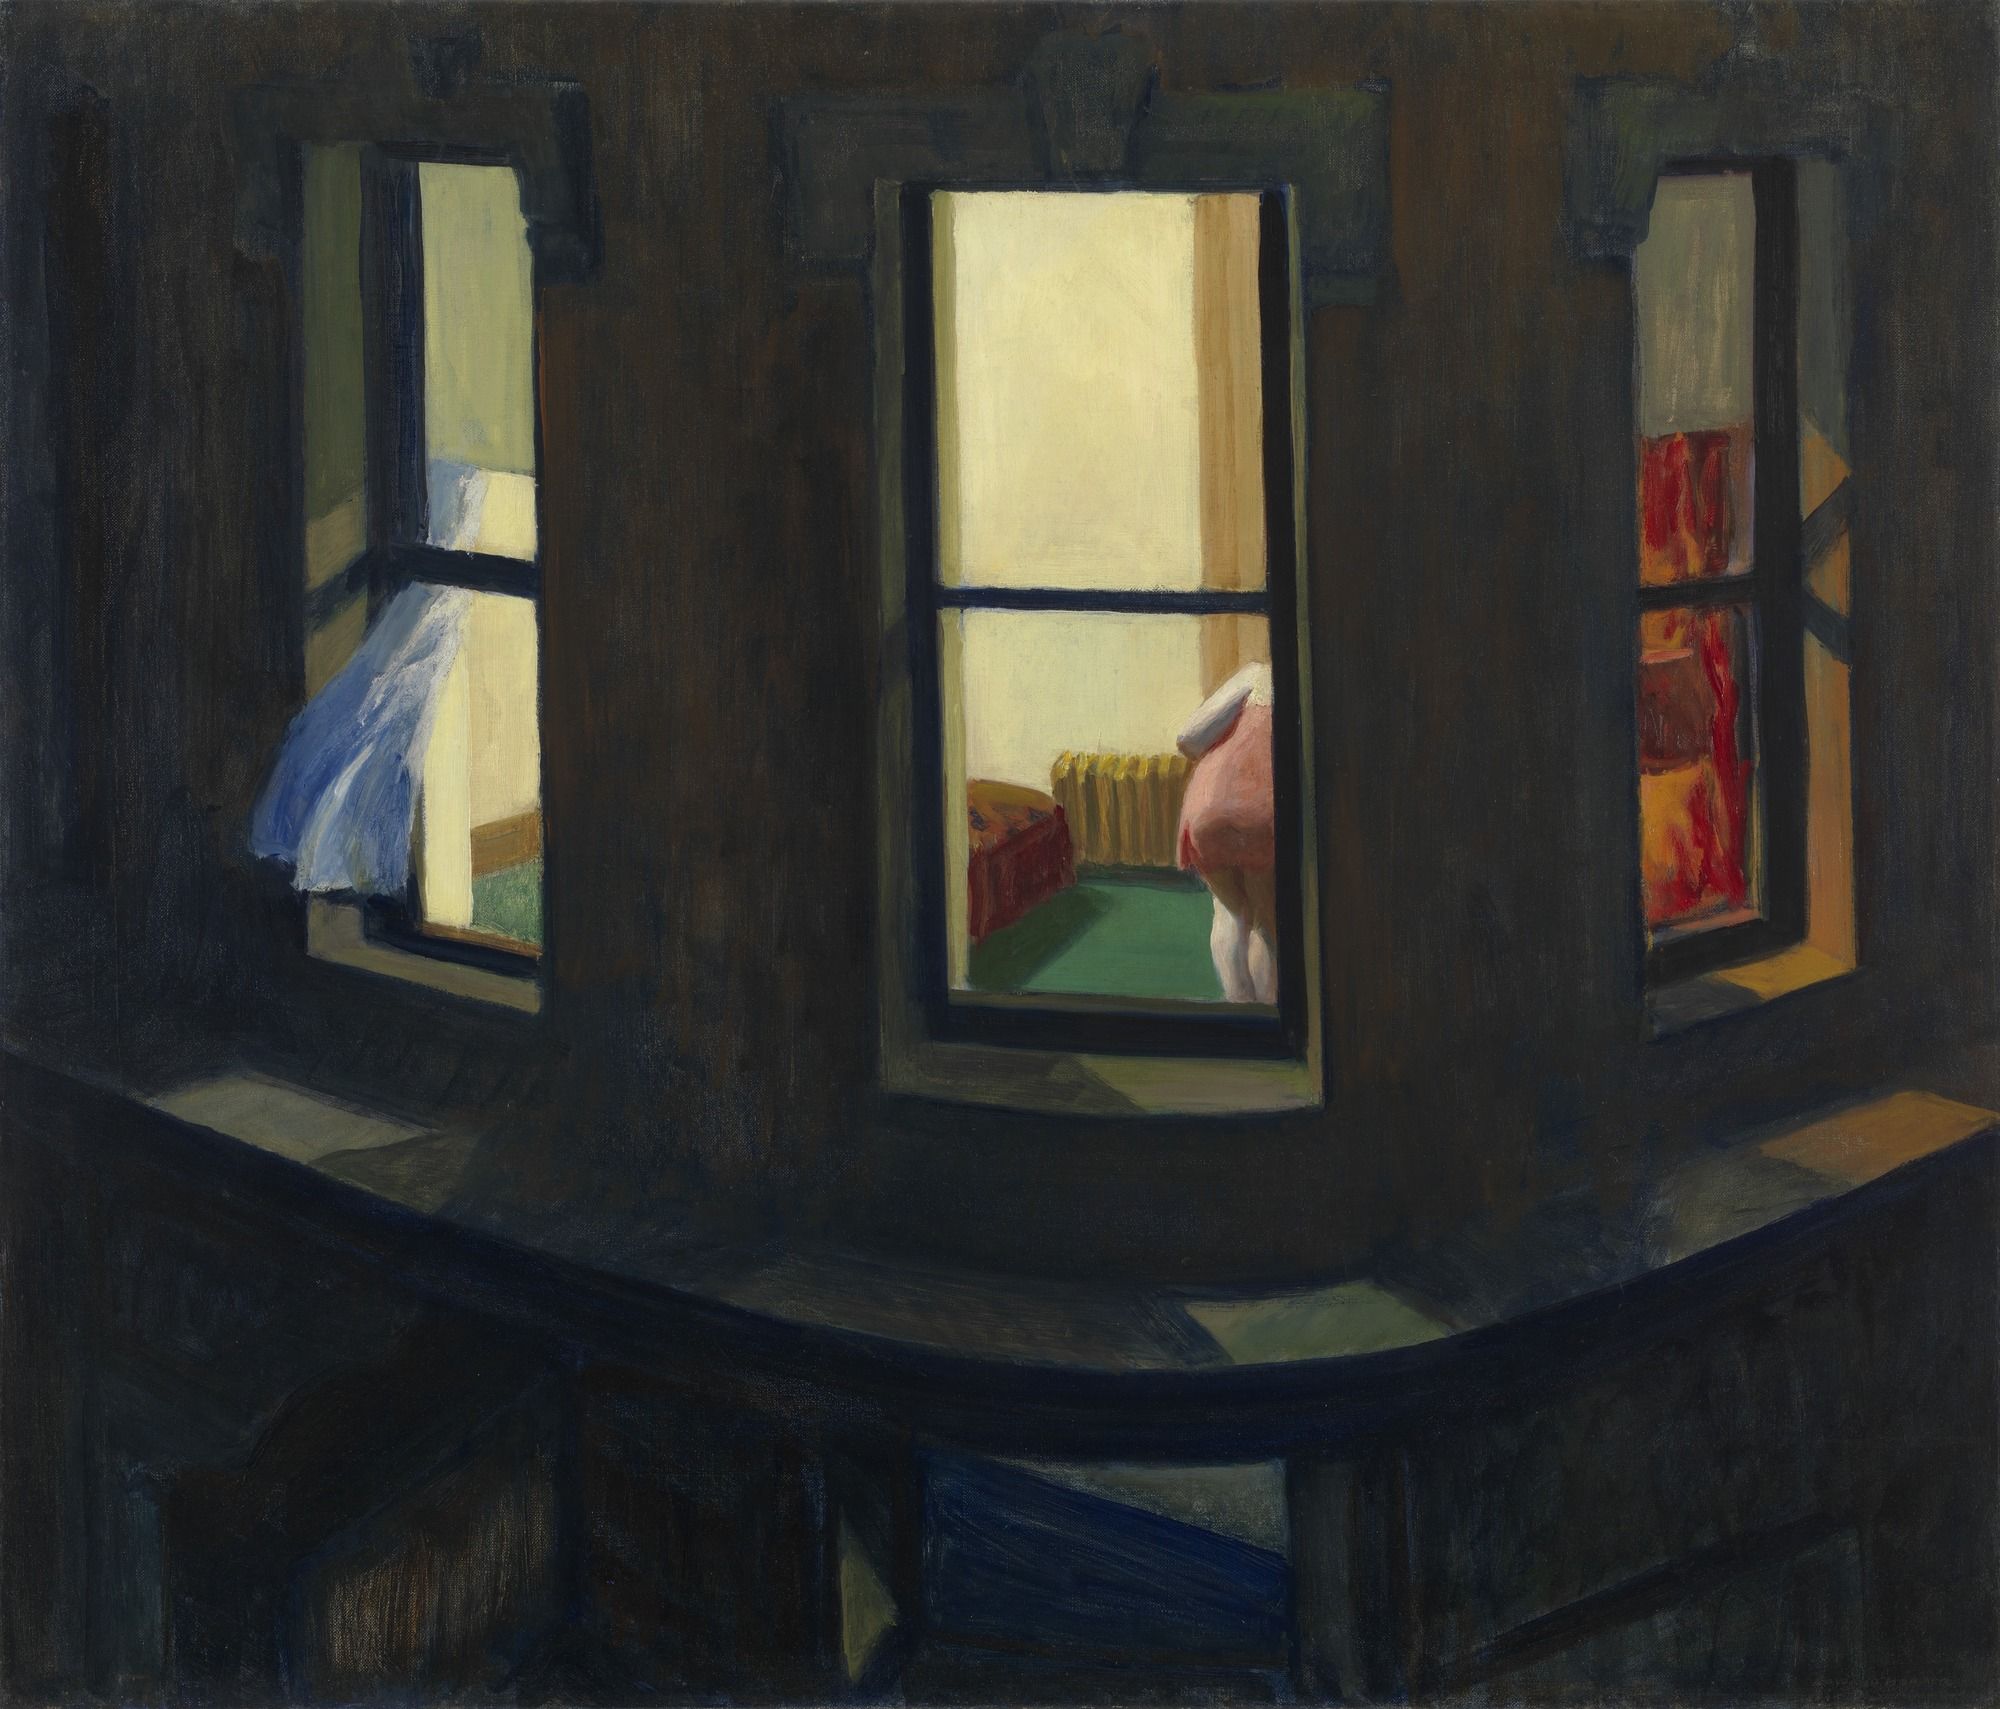 نافذة الليل by Edward Hopper - 1928 - 74 x 86 سم 